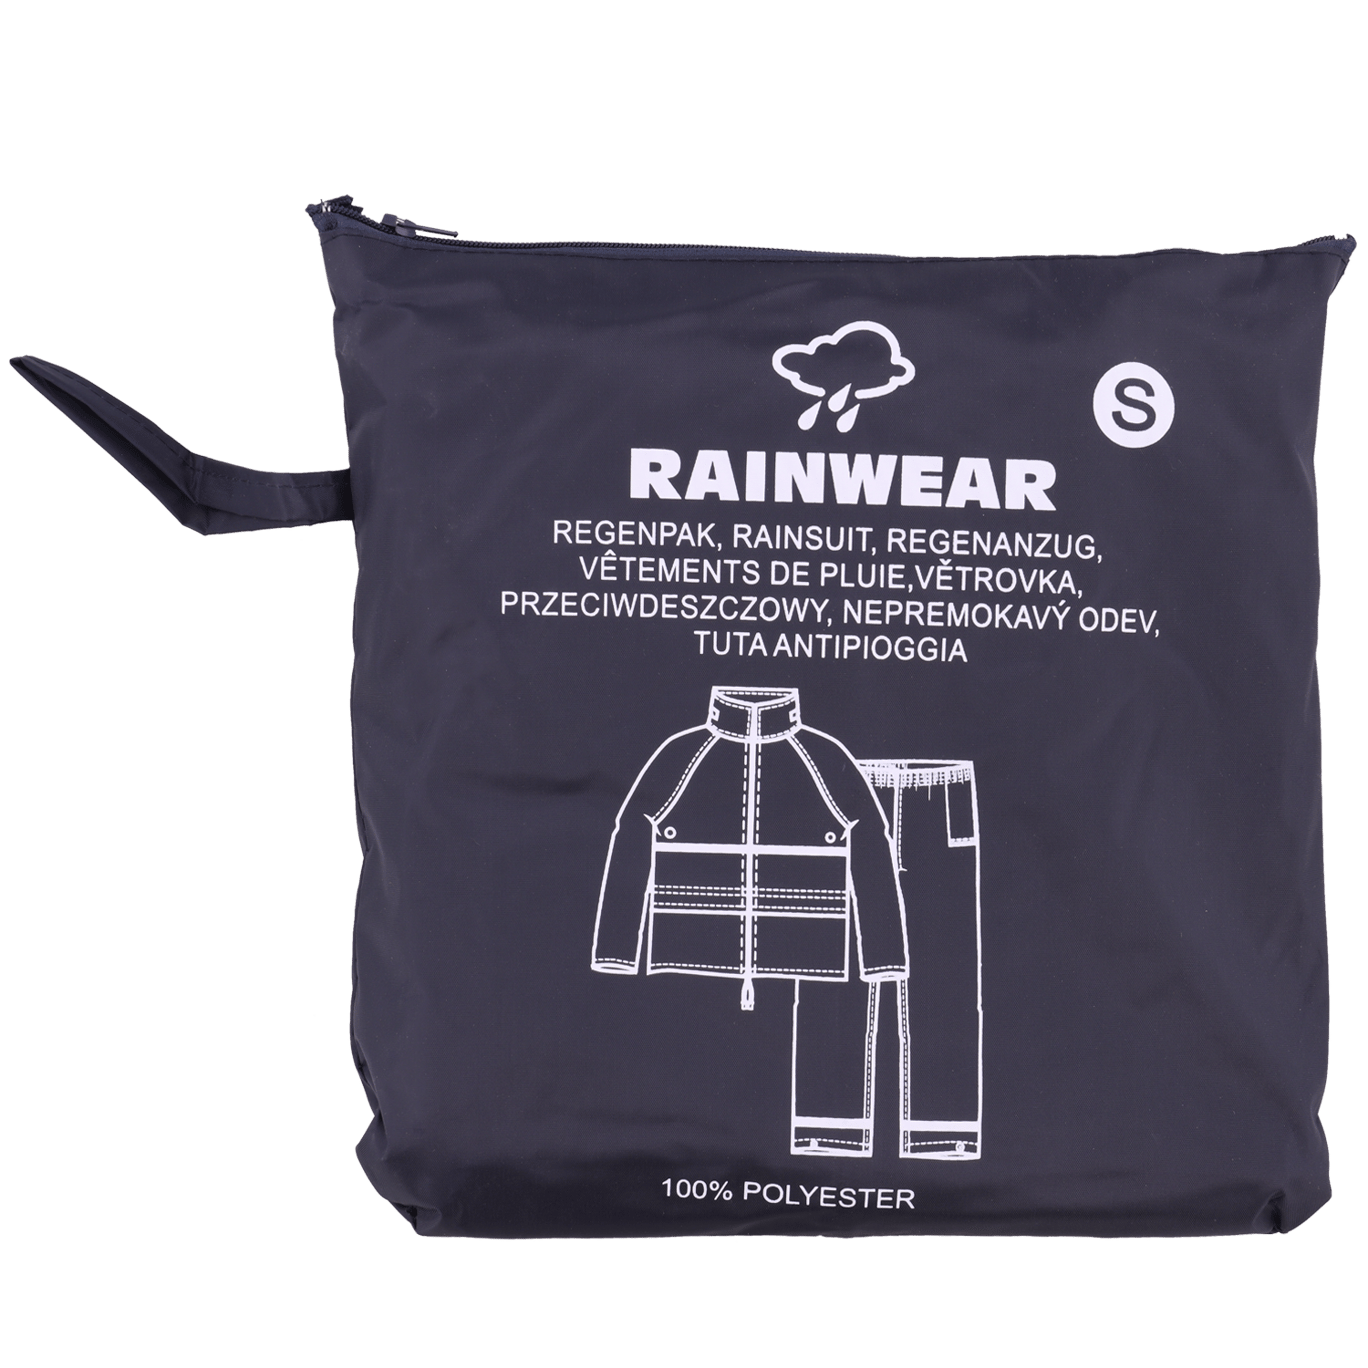 Regenkleding voor laagste prijs | Action.com